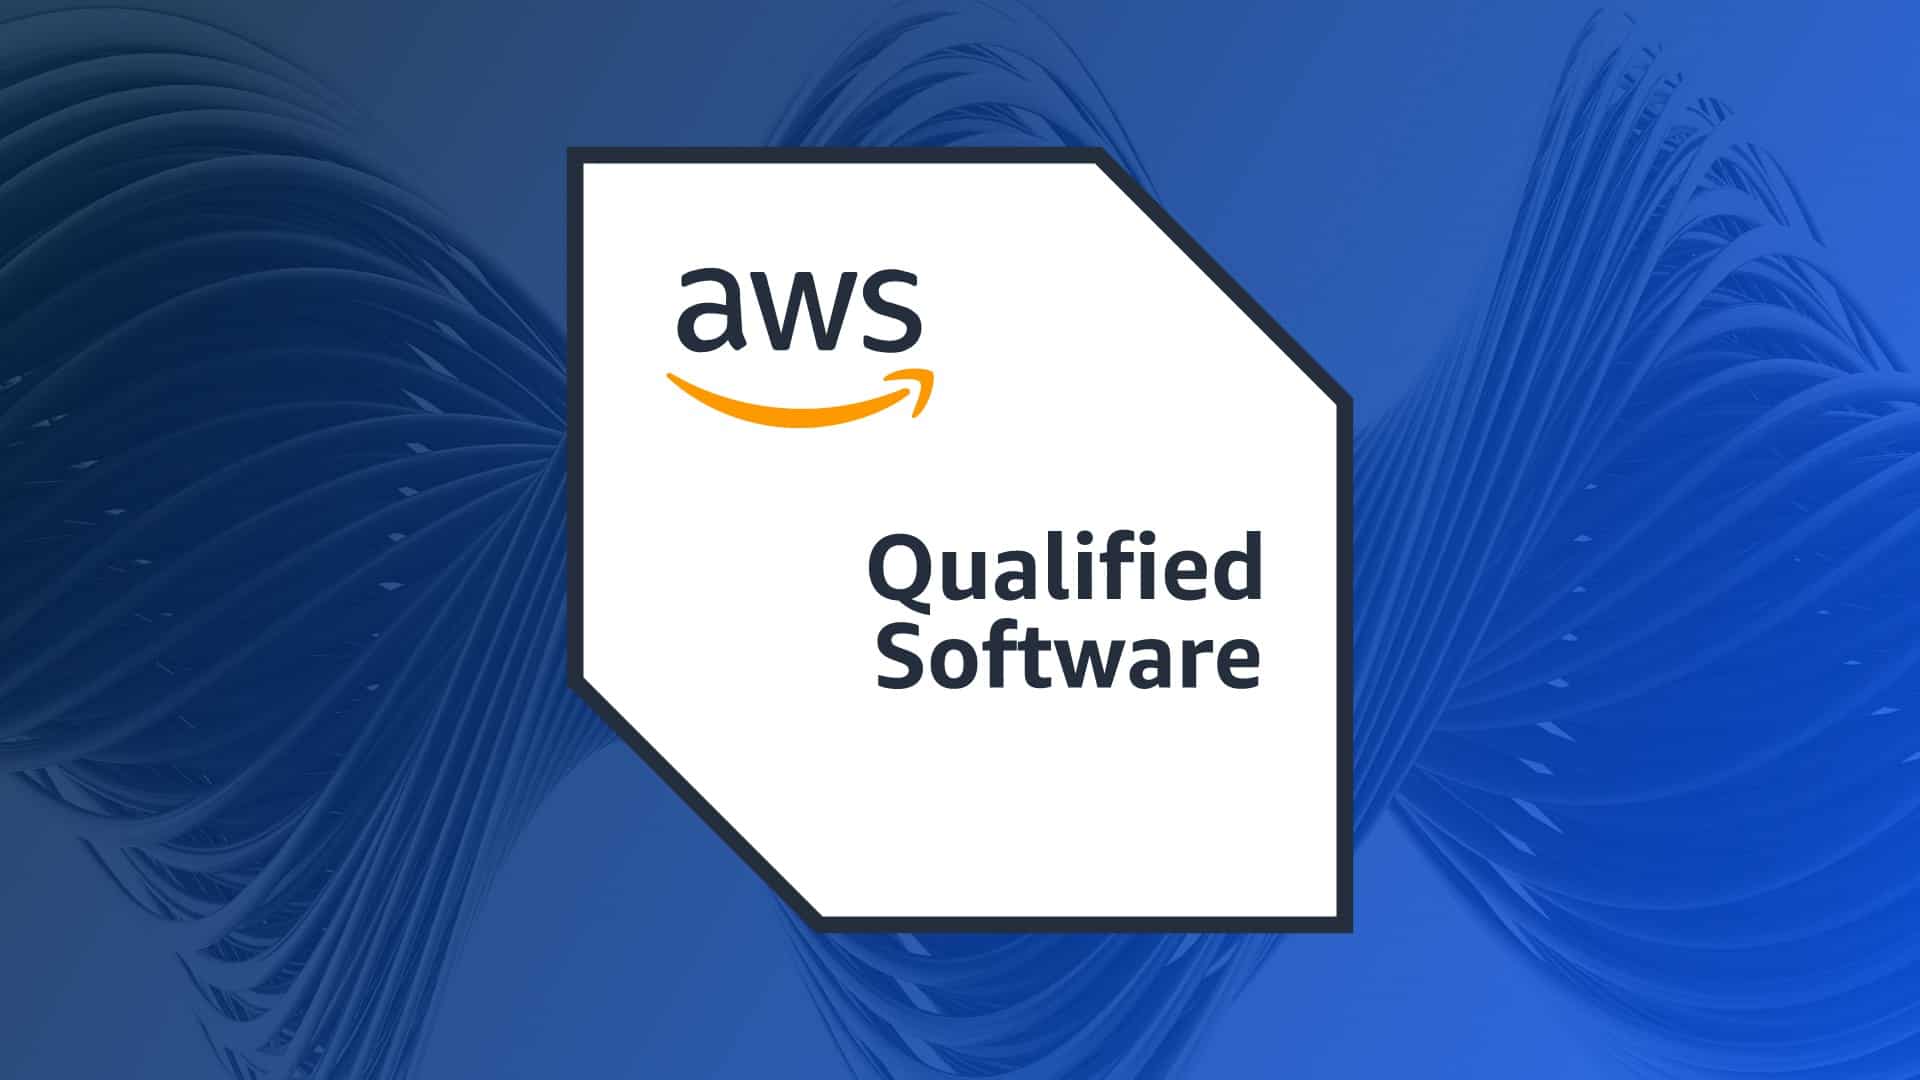 Cloudscaler is an AWS software partner!